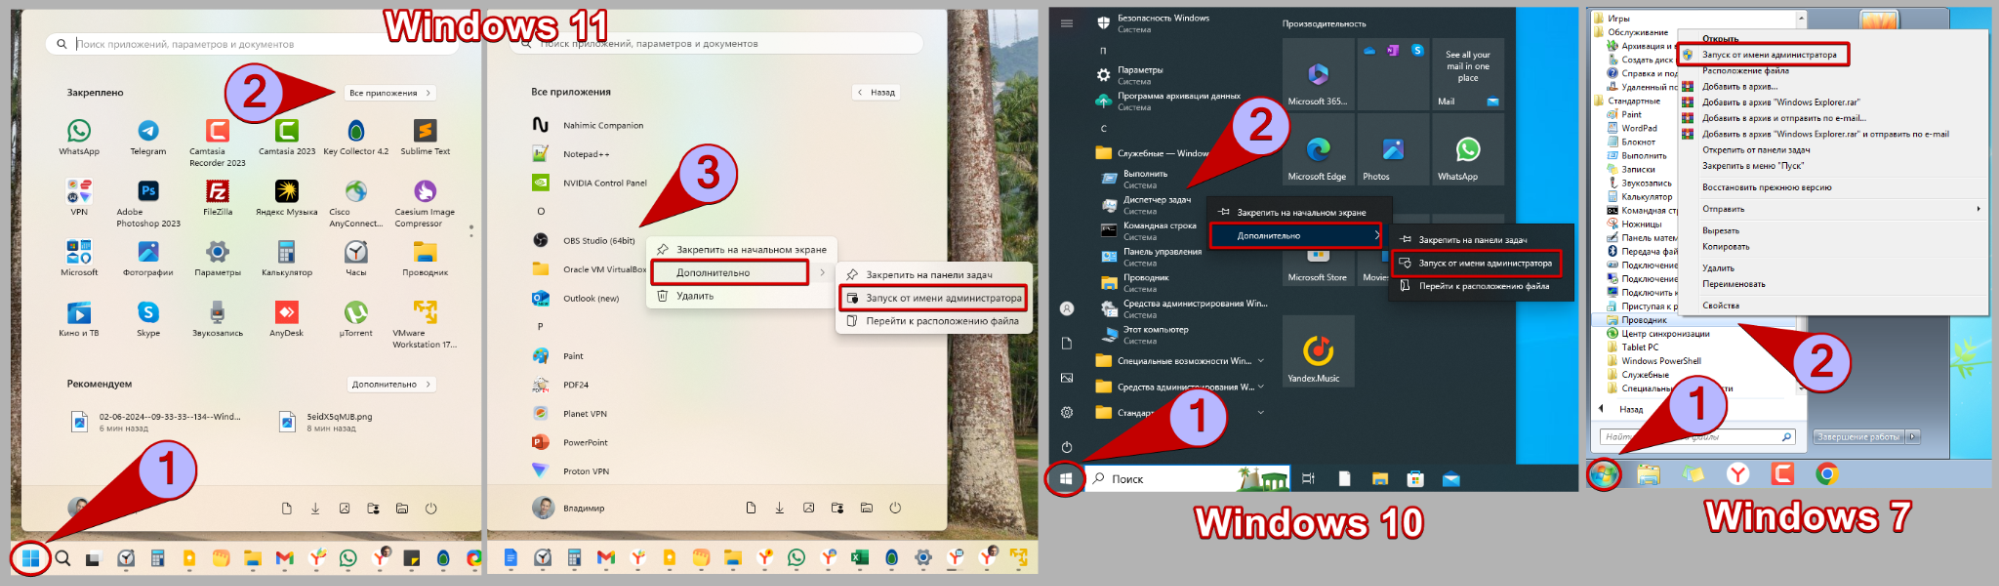 Способ запуска программы из меню Пуск в Windows 11, 10, 7 от имени администратора, показано на 2-х скриншотах.